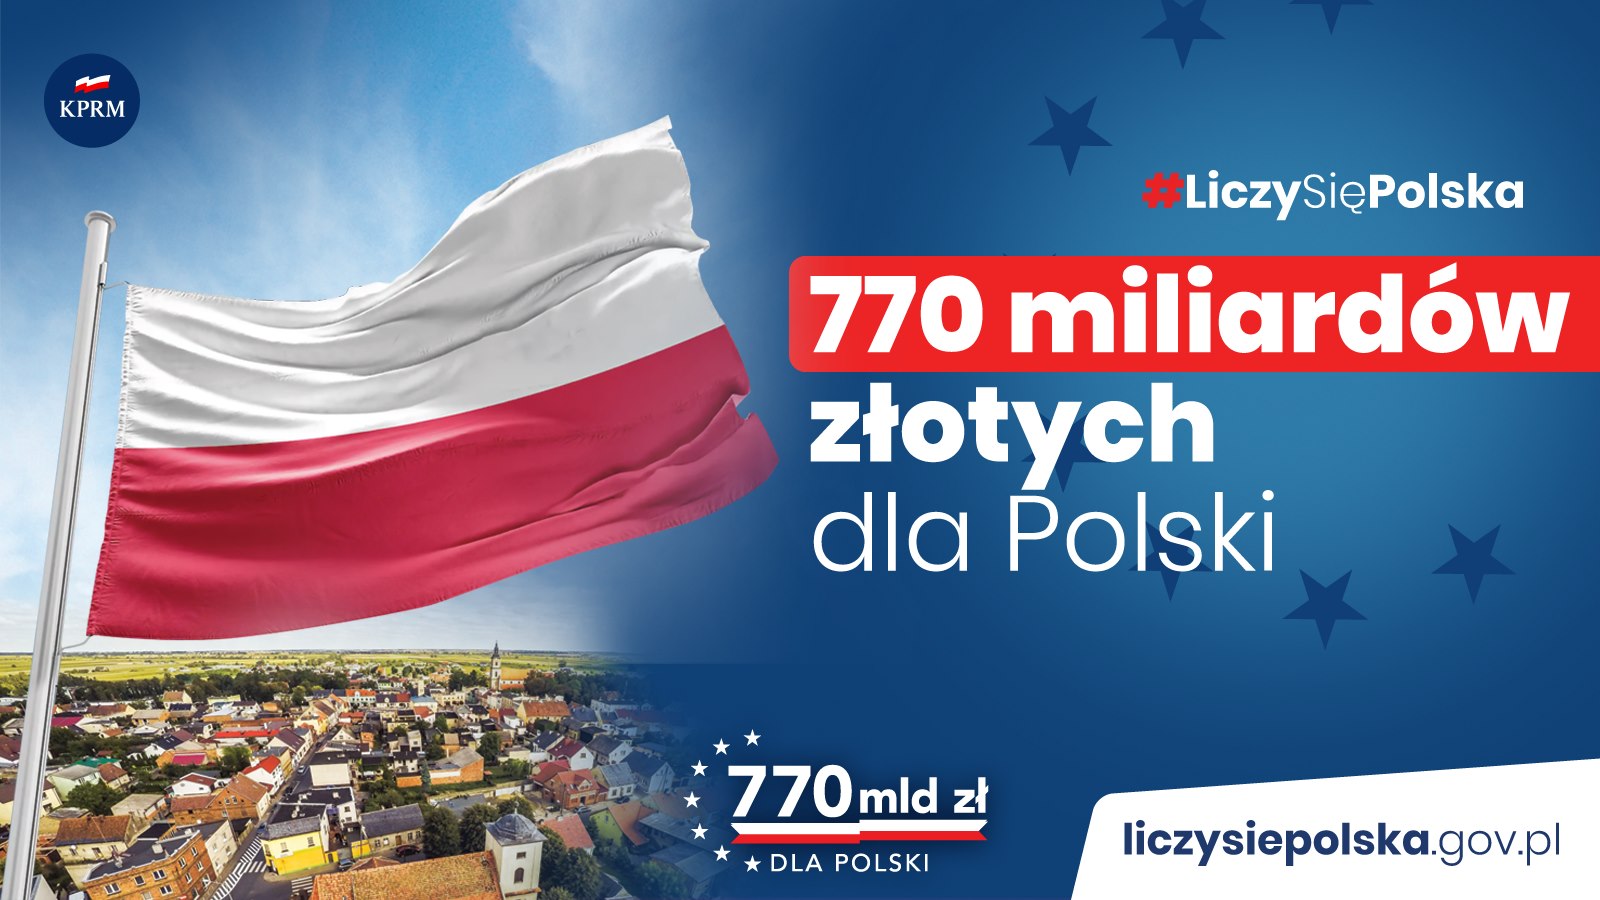 Dzięki sukcesowi negocjacyjnemu premiera Mateusza Morawieckiego jako rząd Prawa i Sprawiedliwości wywalczyliśmy największe w historii naszego członkostwa w UE środki dla naszego kraju – 770 mld zł.